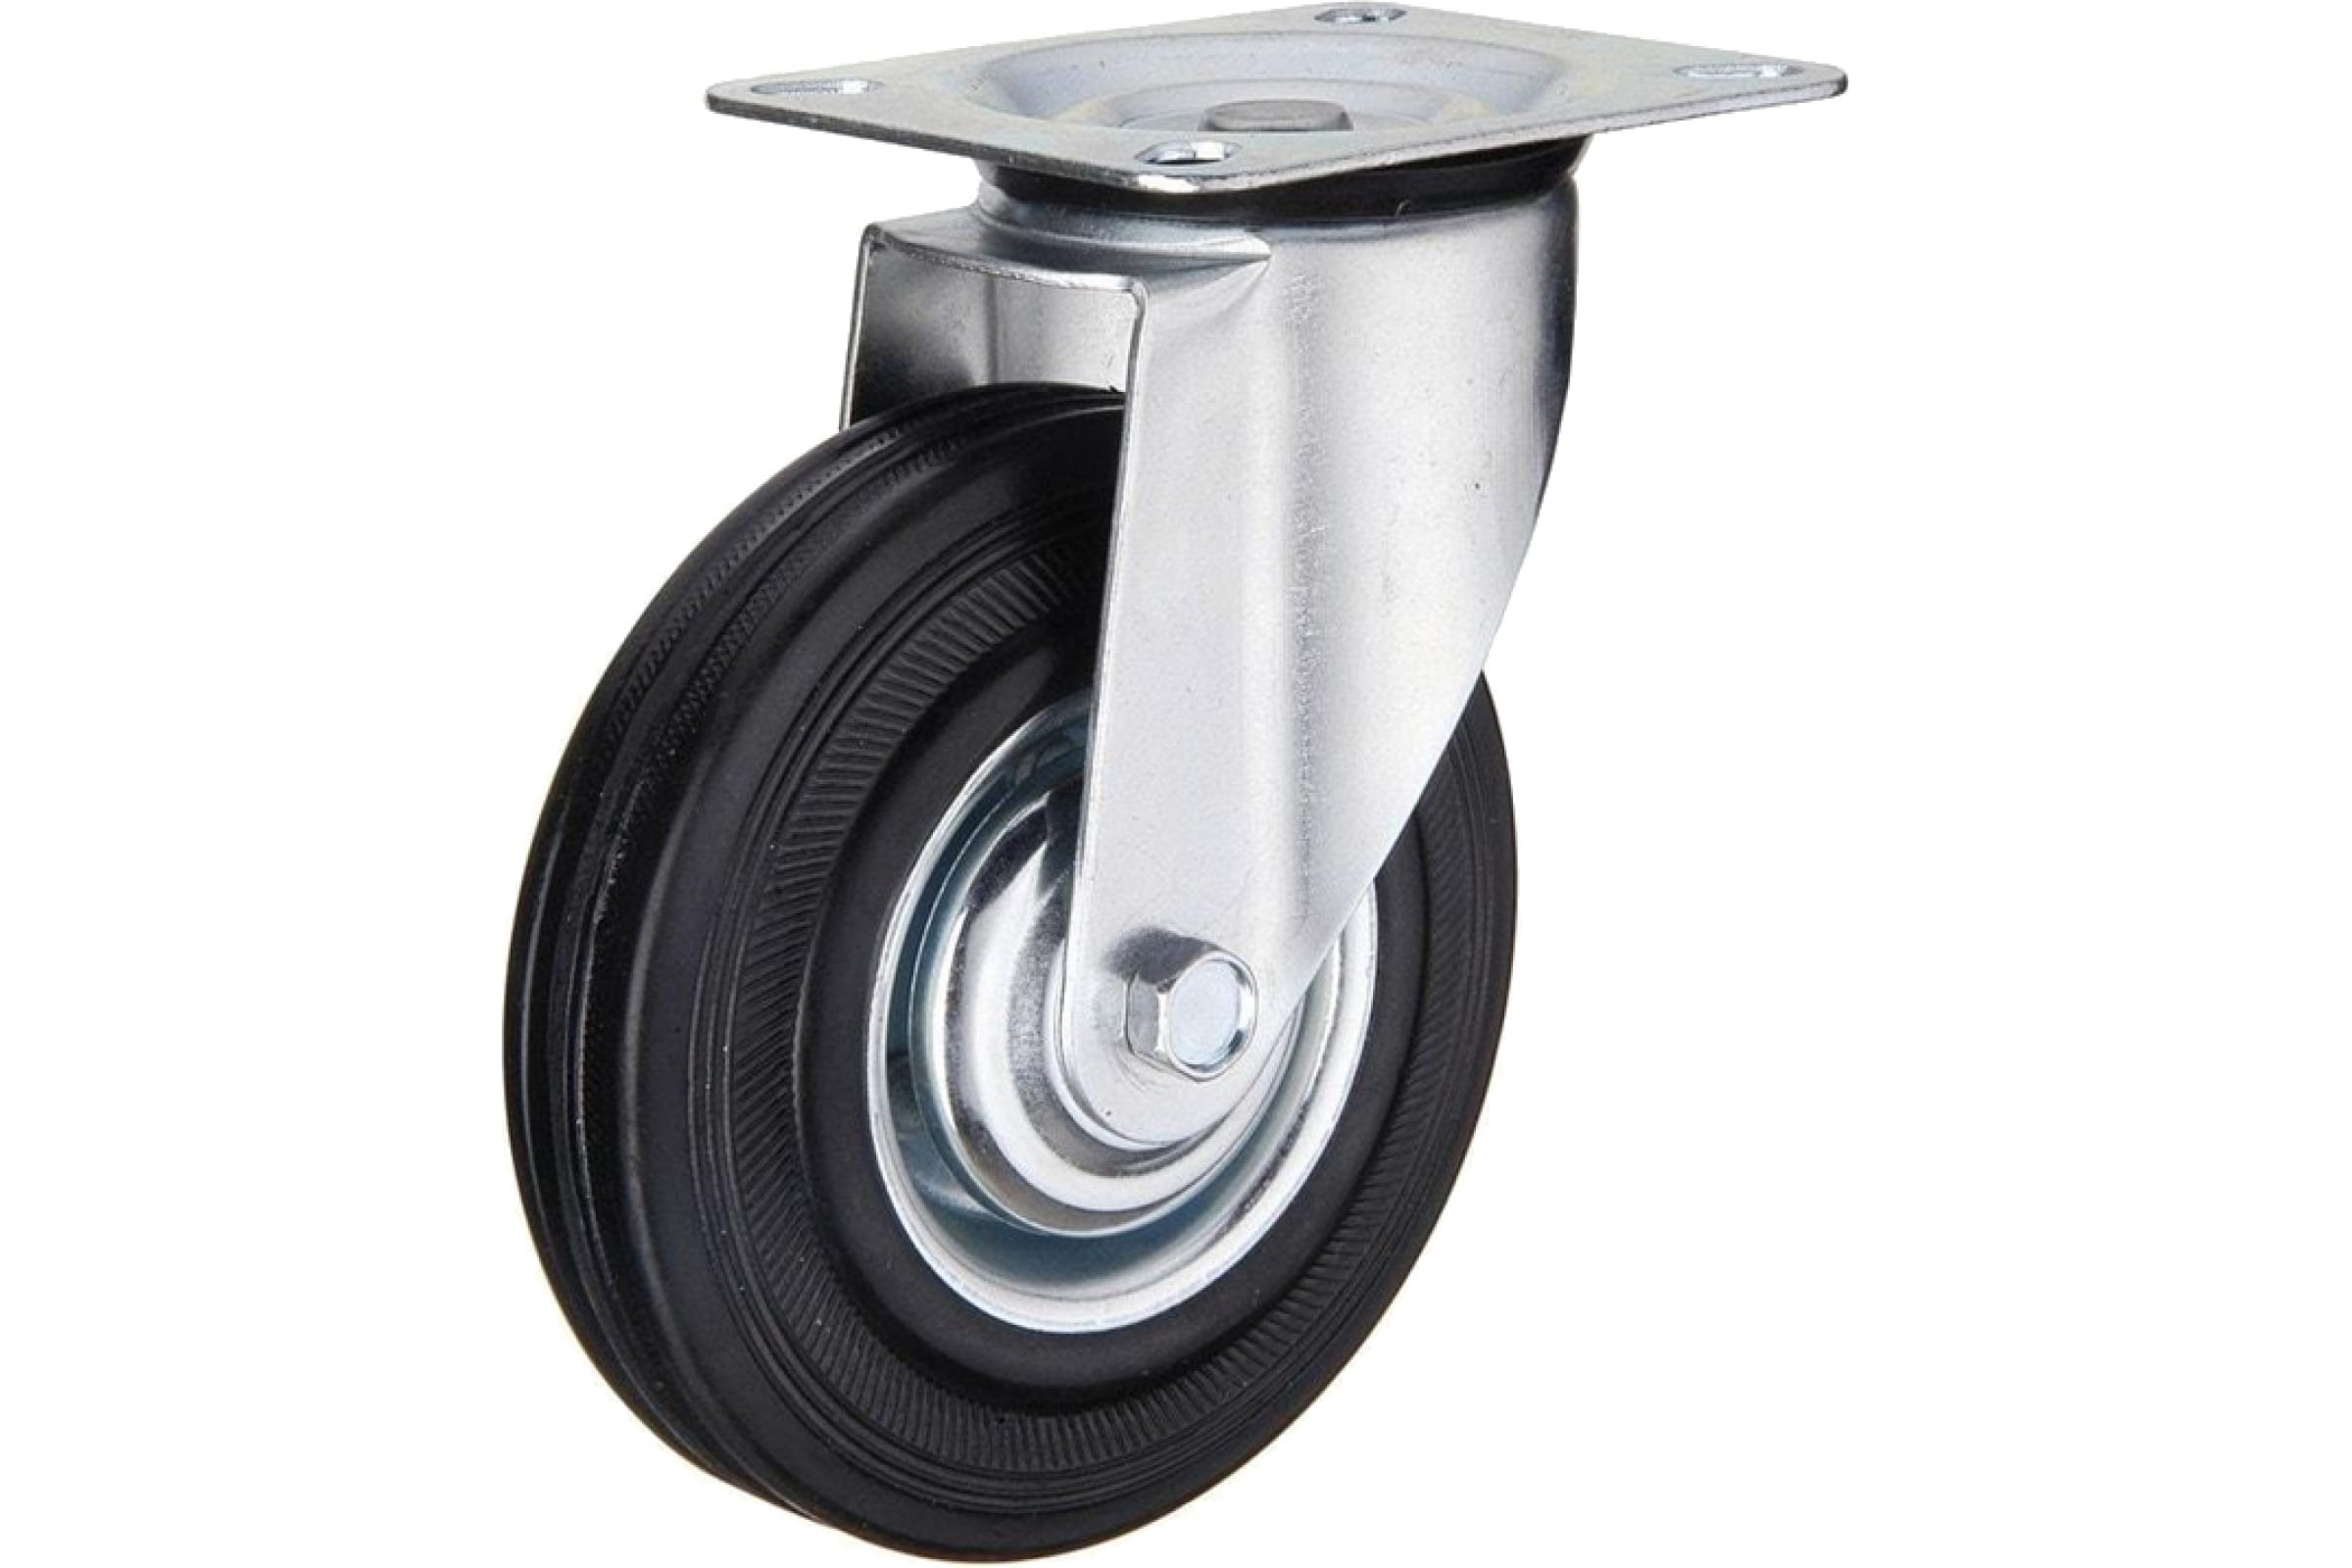 MFK-TORG Колесо промышлен поворот 100мм SC42 4001100 колесо серая мягкая резина неповоротное sus 304 50 мм mfk torg 3052050нерж